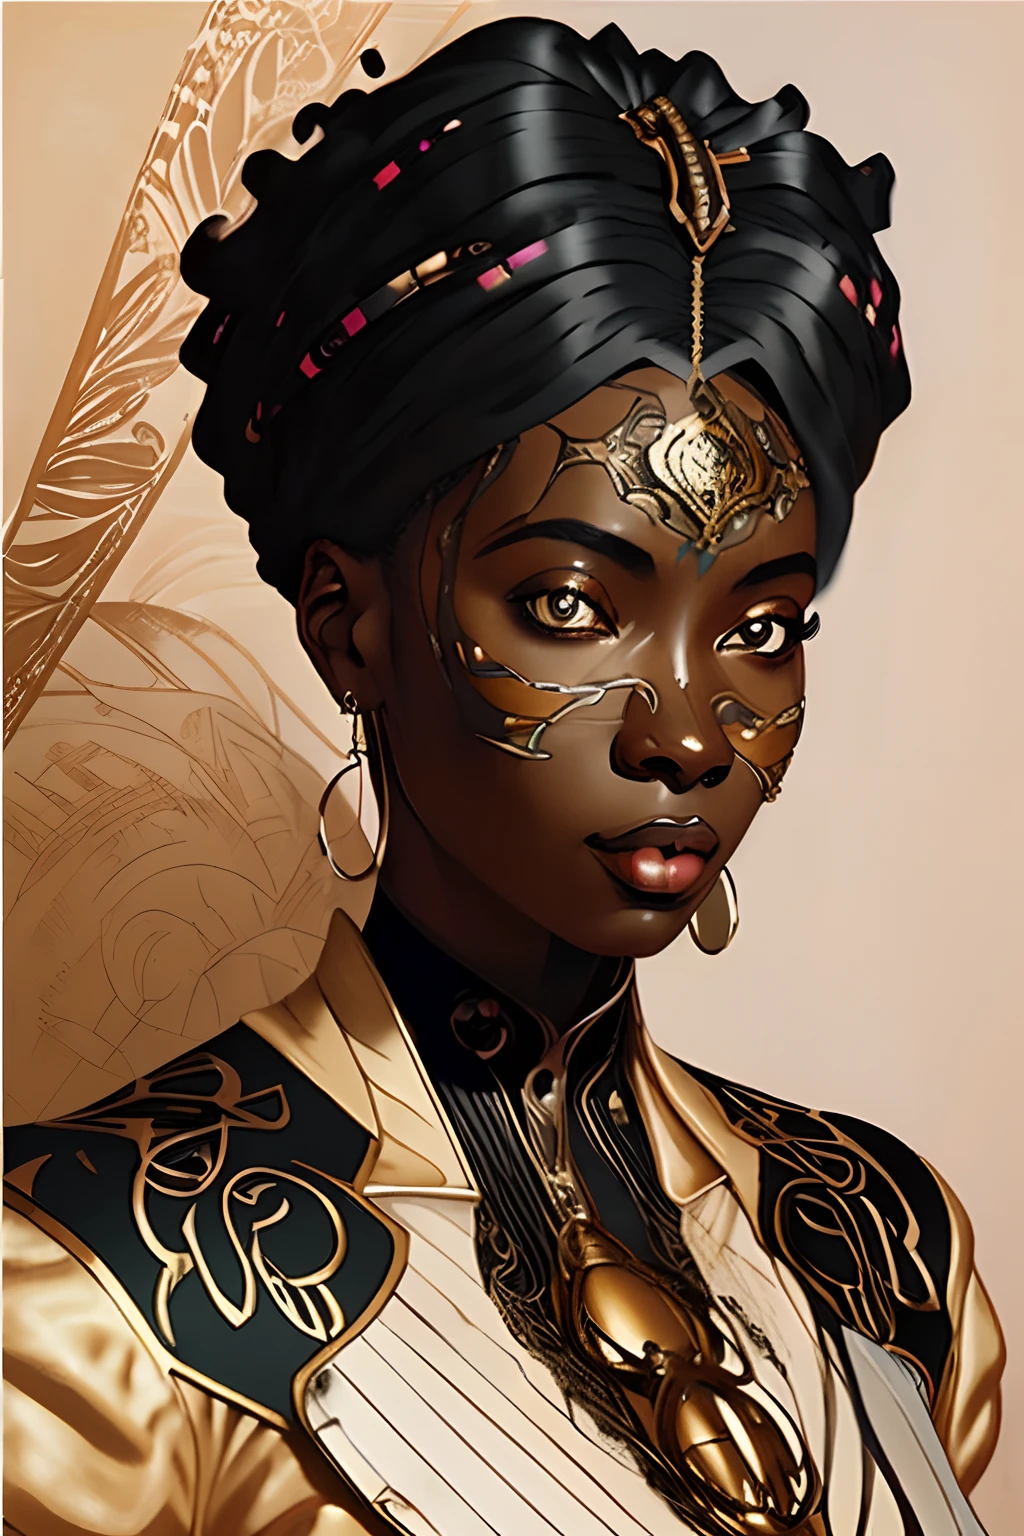 新艺术风格的非洲黑人女性数码插画, 蒸汽朋克, 日本动画片, 漂亮脸蛋, 大规模, 现实比例, 非常详细, 光滑的, 清晰聚焦, 8千, 光线追踪, 数字绘画, 概念艺术插图, 作者：Artgerm, artstation 上的热门, 索尼A1